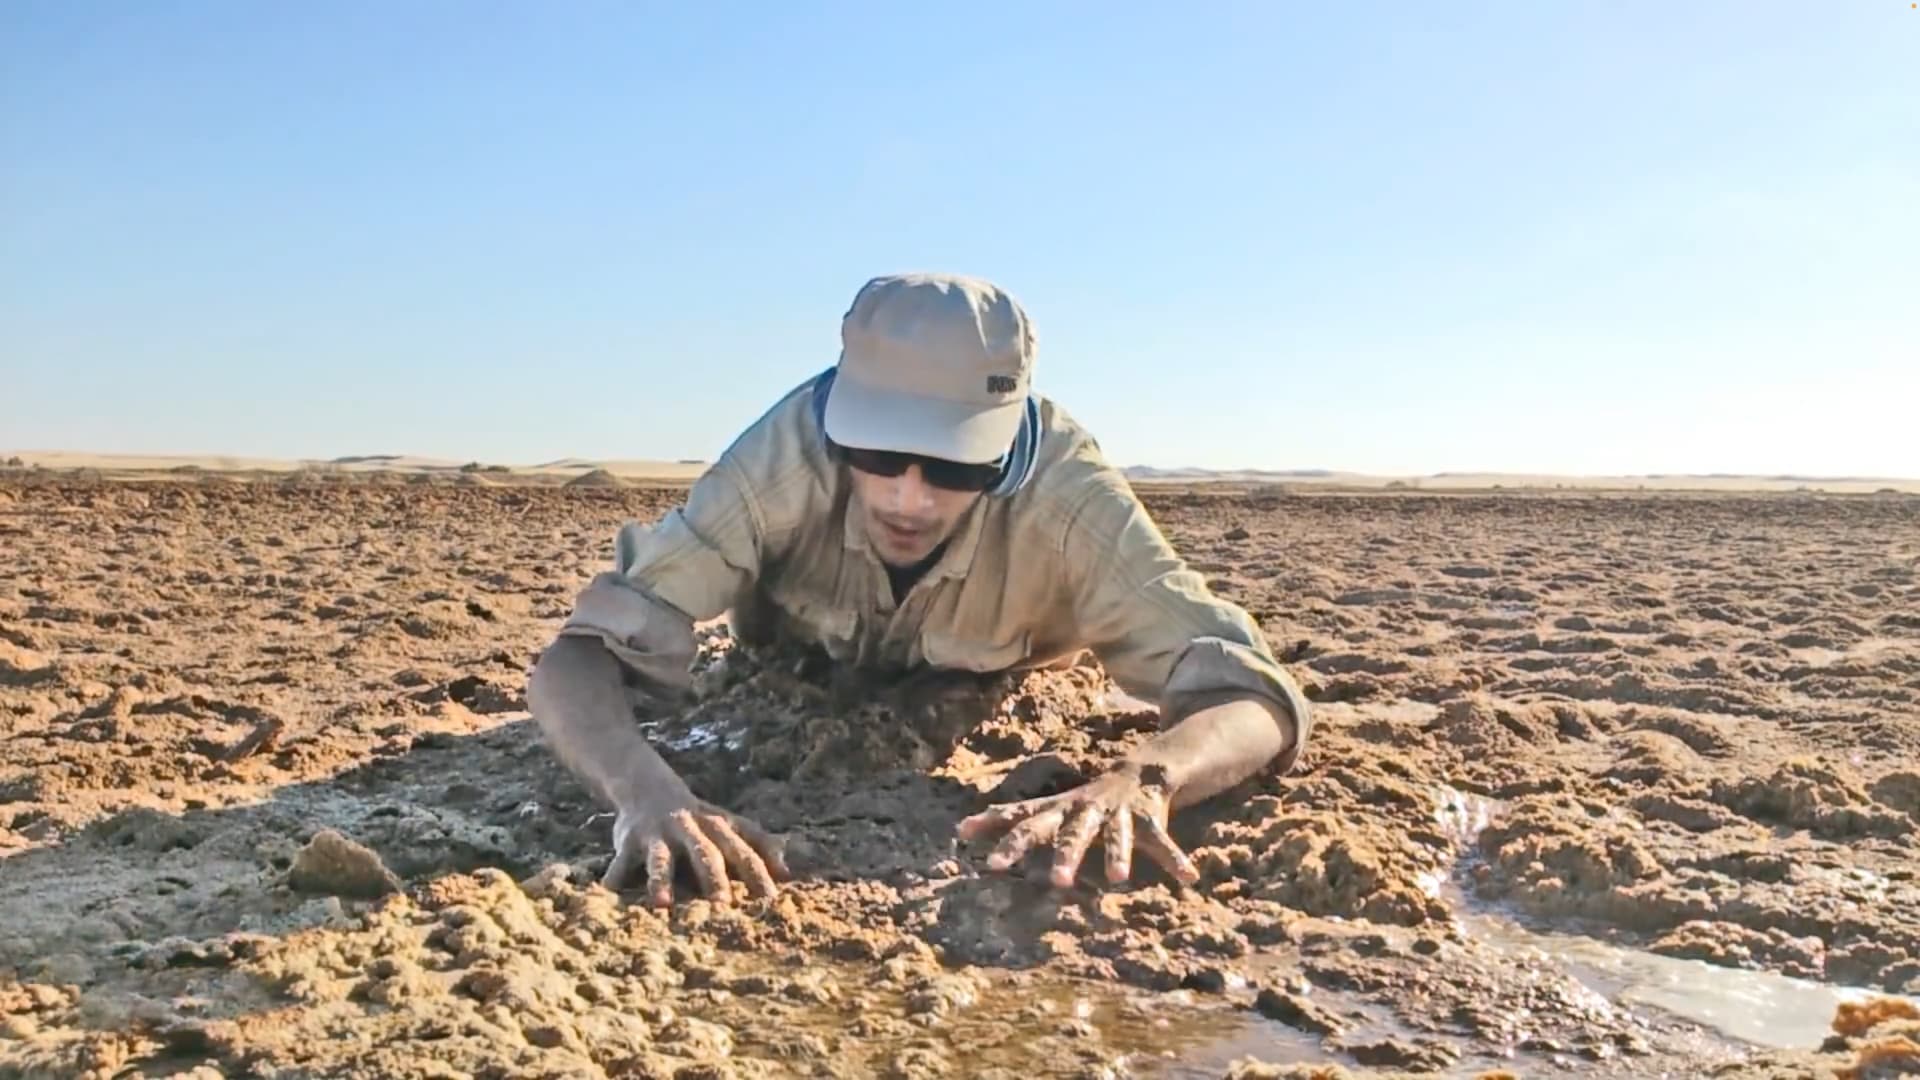 المغامر المصري، محمد شاهين، يشرح كيفية الخروج من الرمال المتحركة